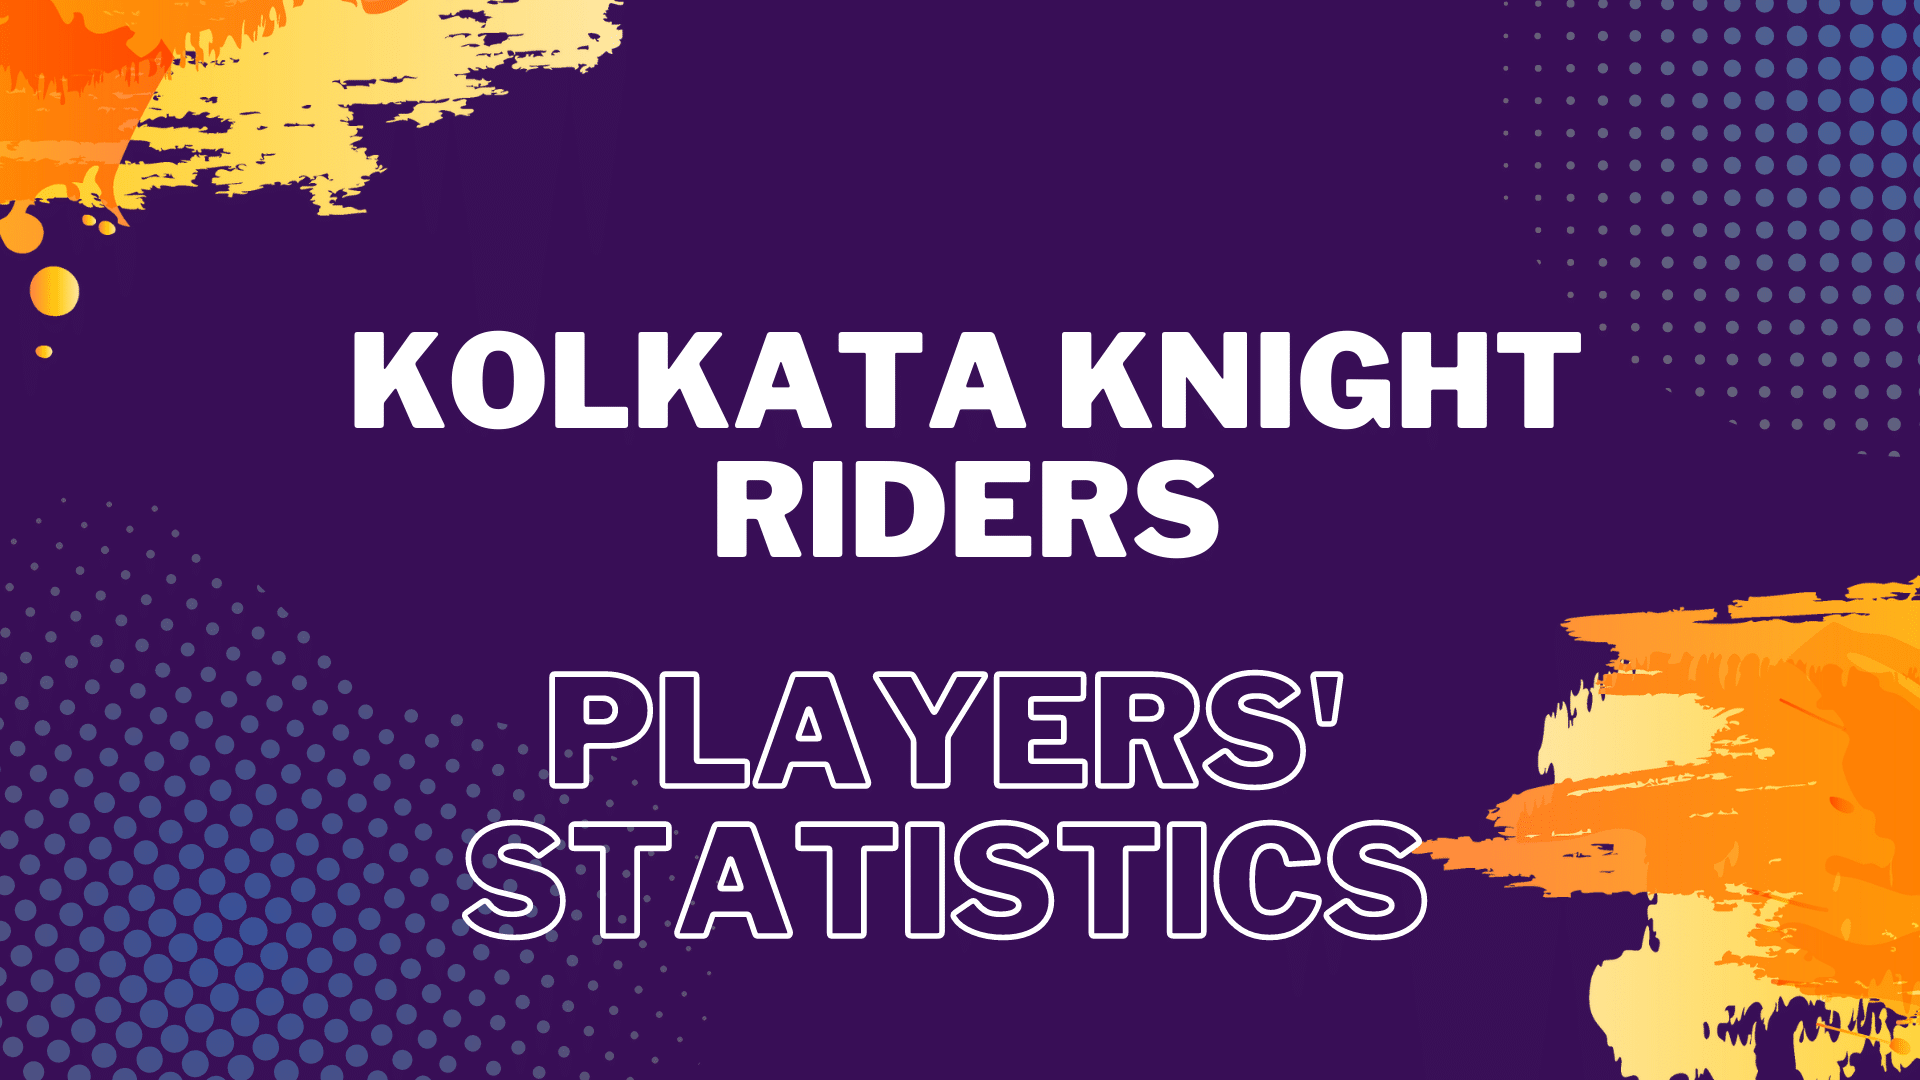 kolkata knight riders